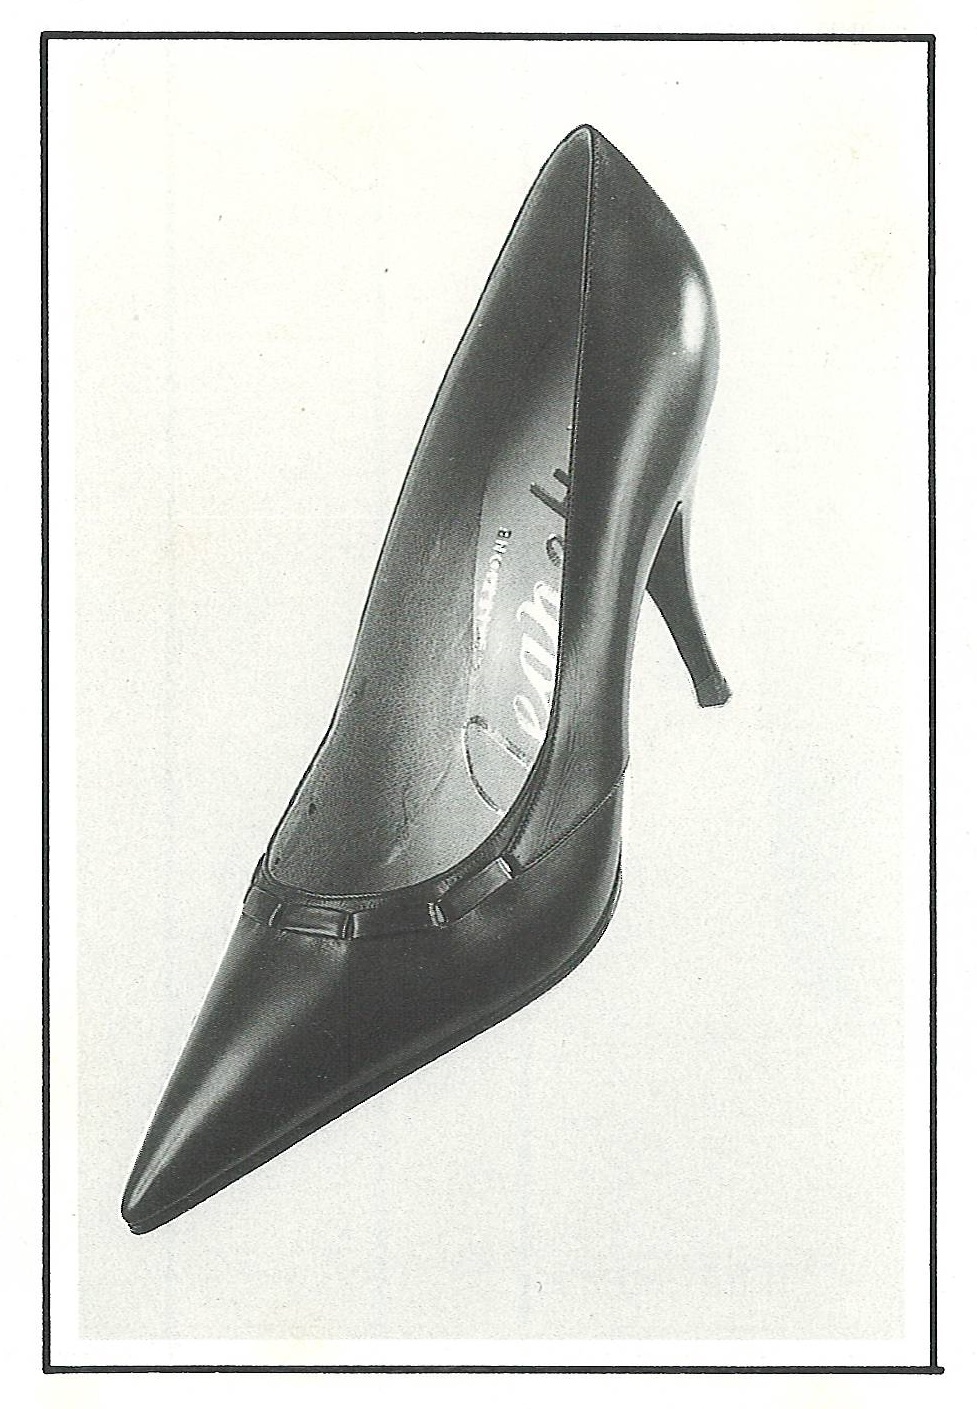 scarpe anni 50